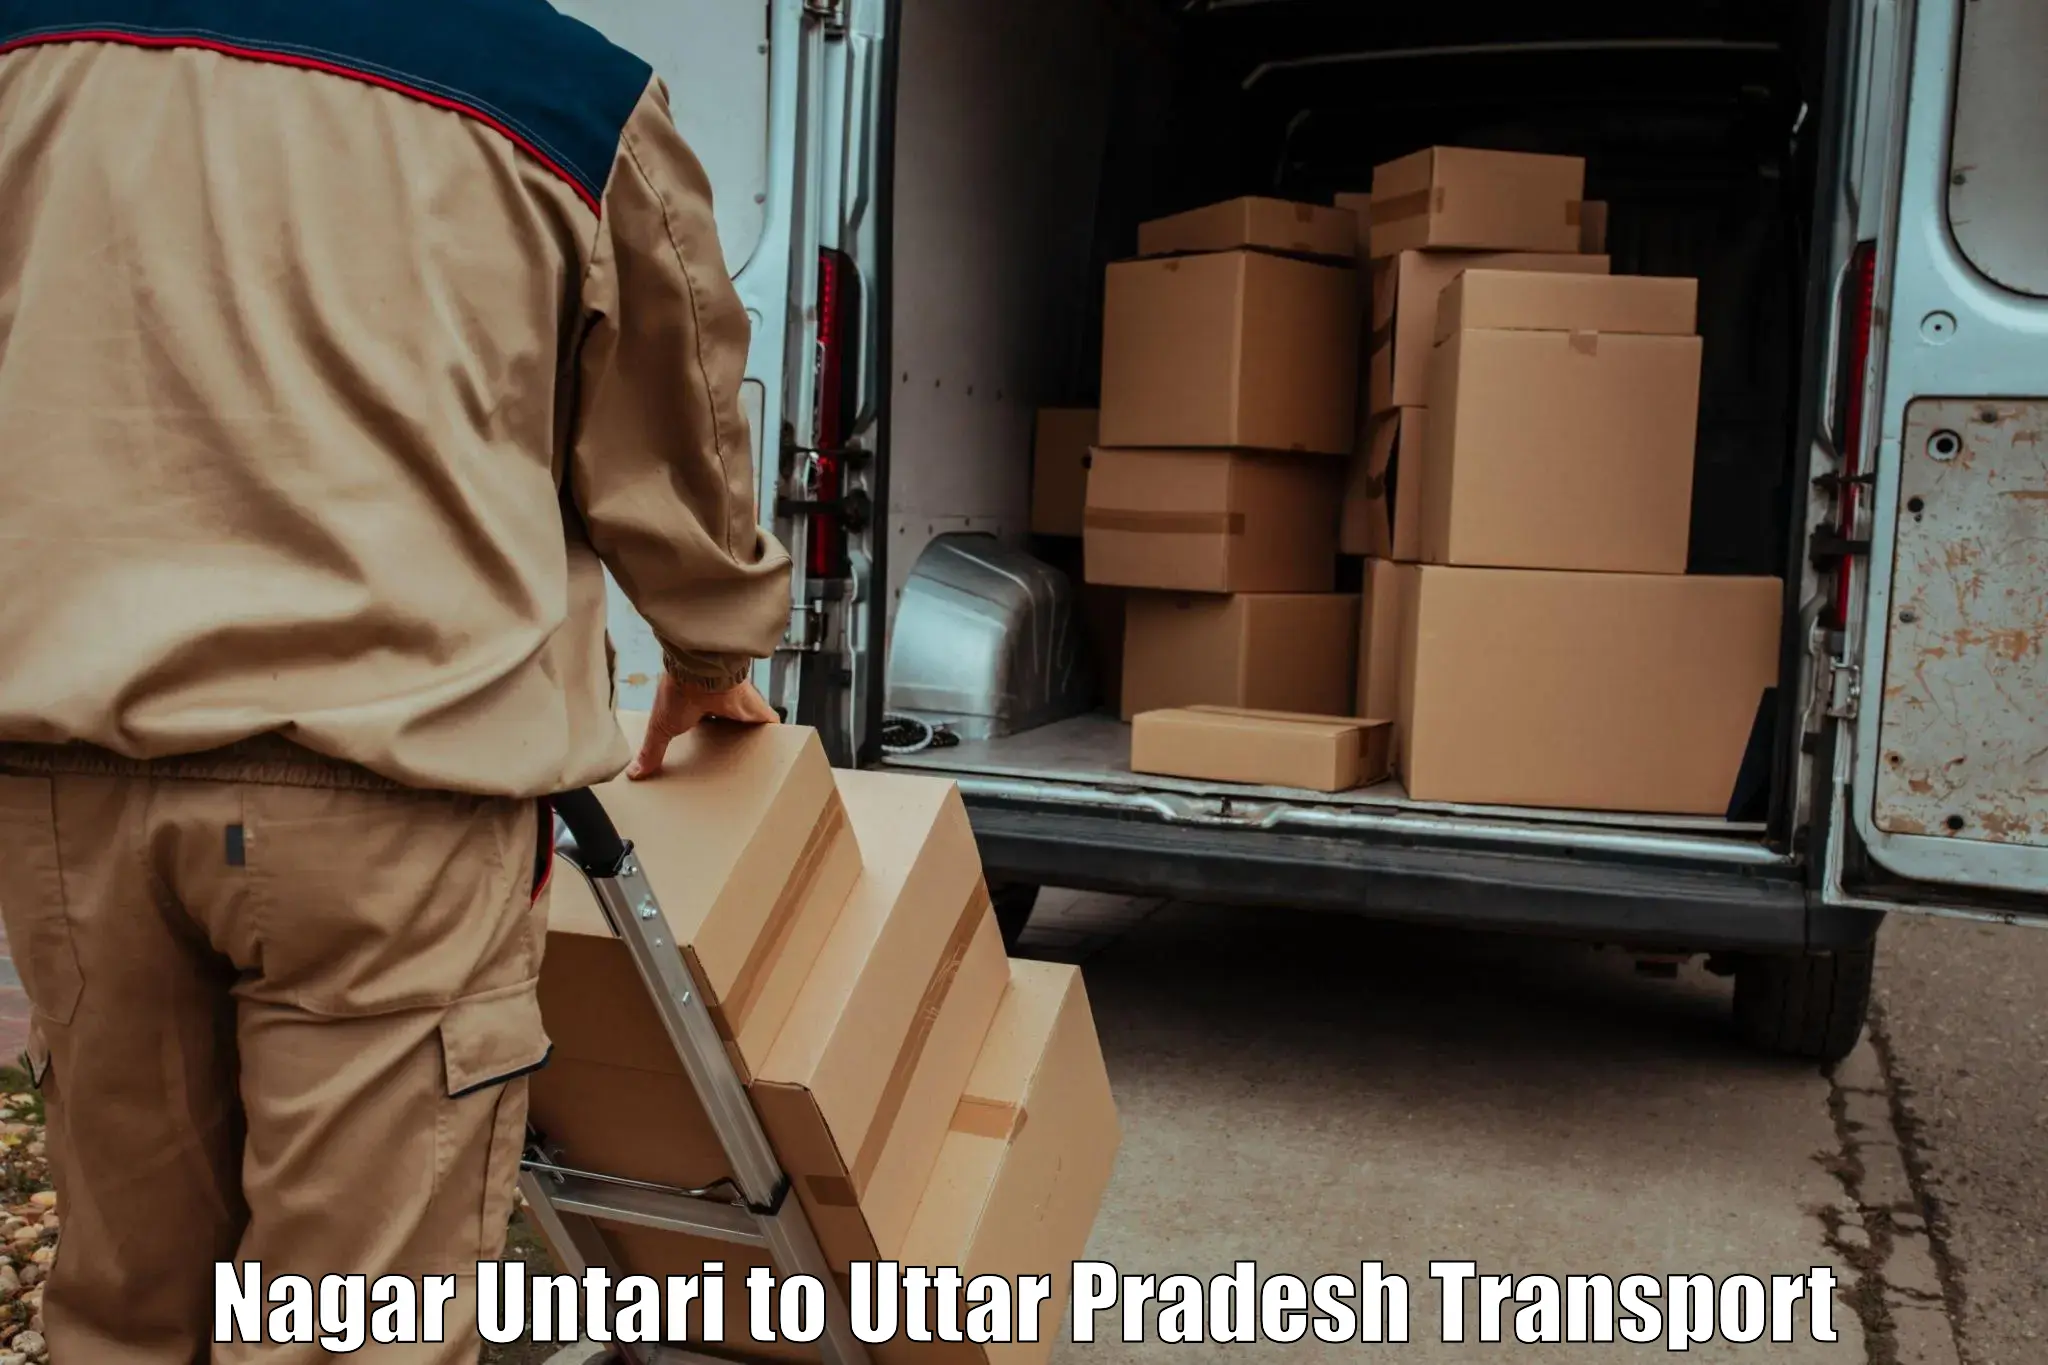 Air freight transport services in Nagar Untari to Bharuwa Sumerpur